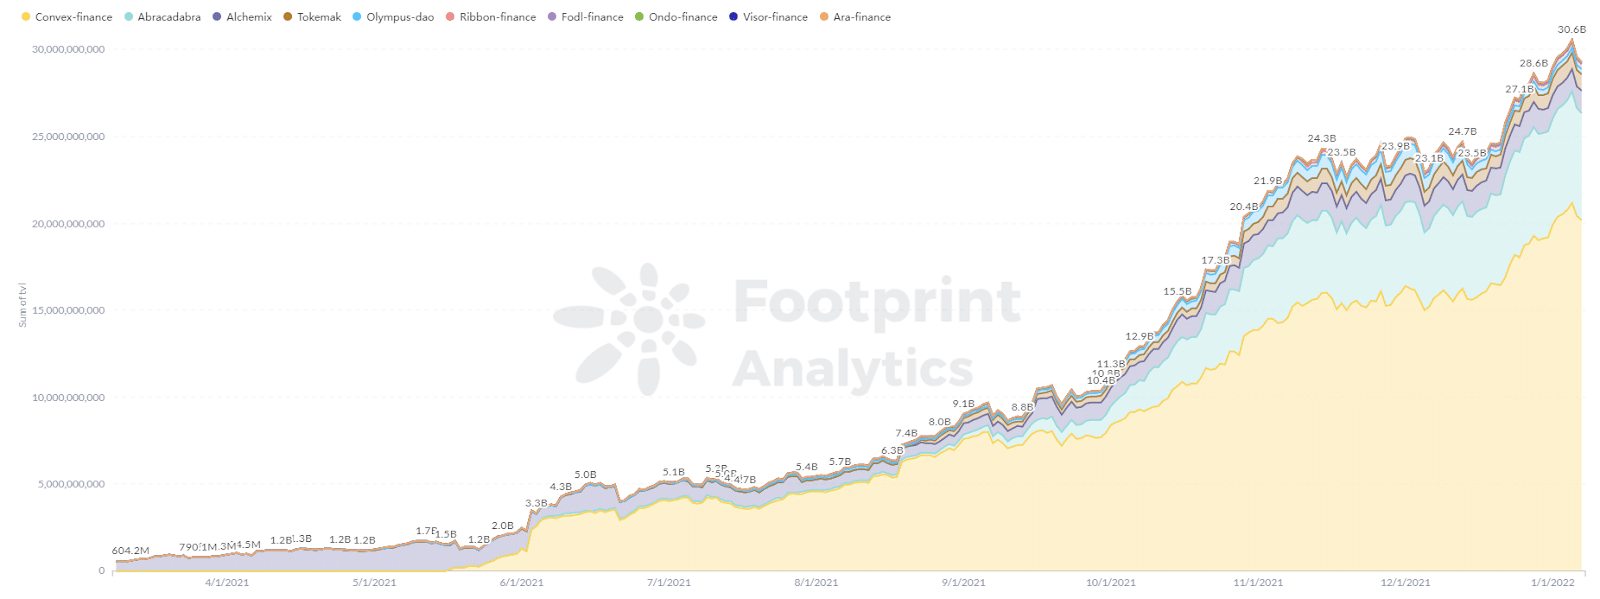 Footprint Analytics - TVL dei progetti DeFi 2.0 saliti da 0 a 30 miliardi nel 2021